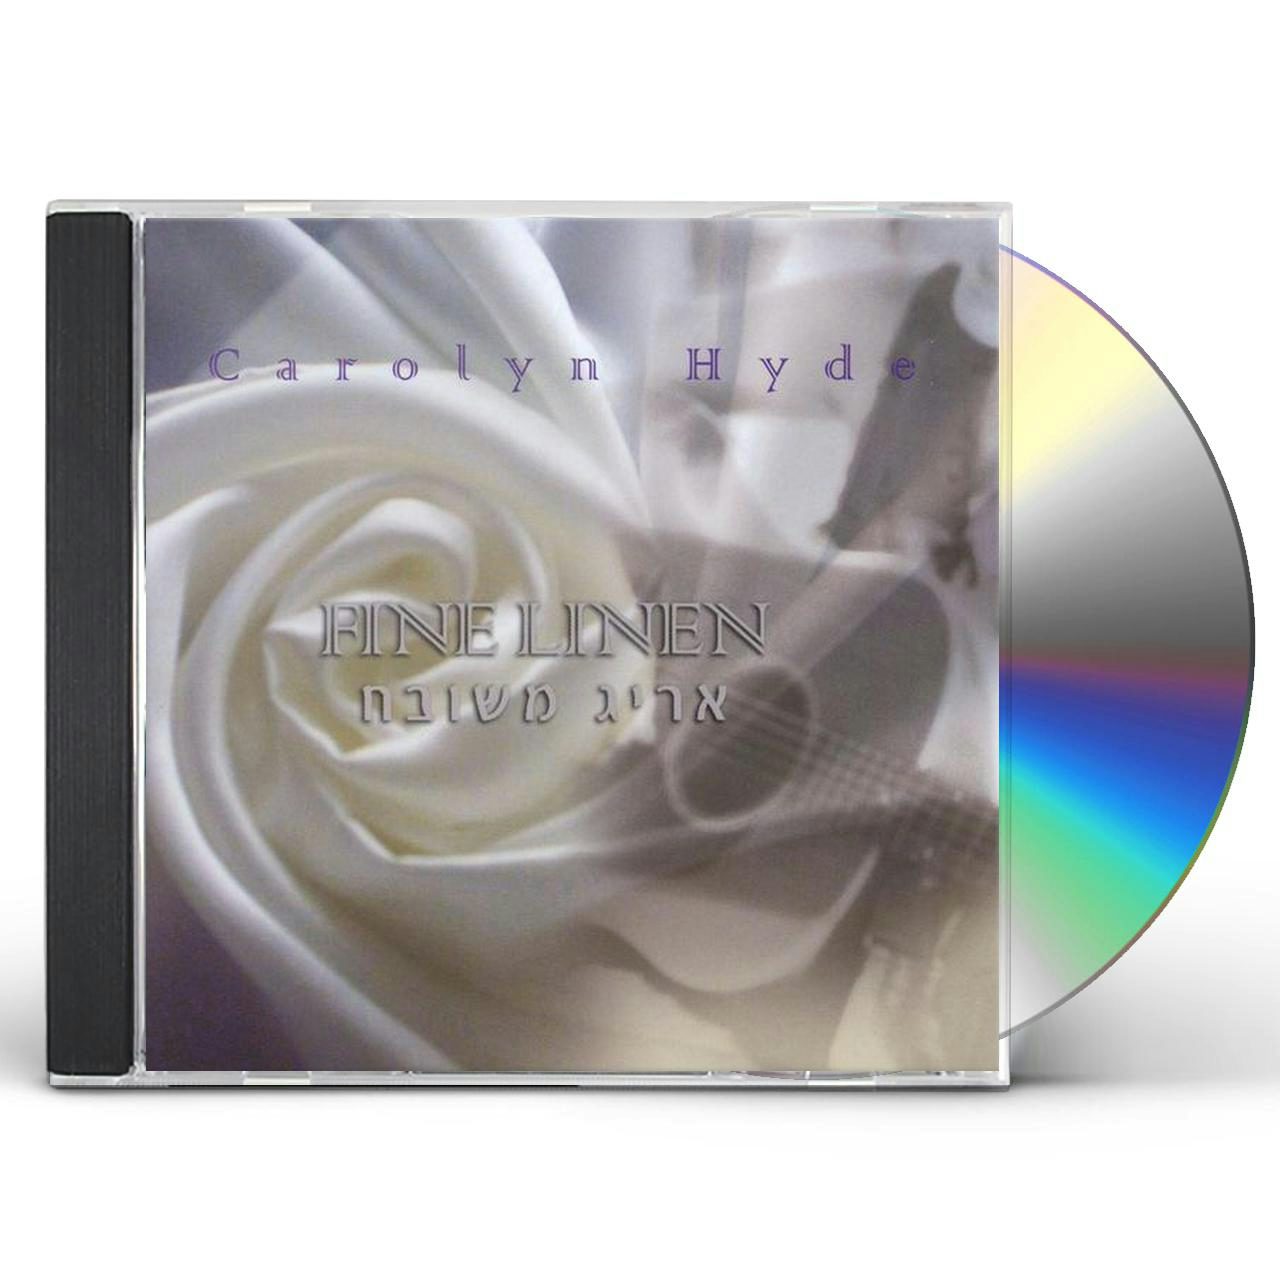 Carolyn Hyde FINE LINEN CD